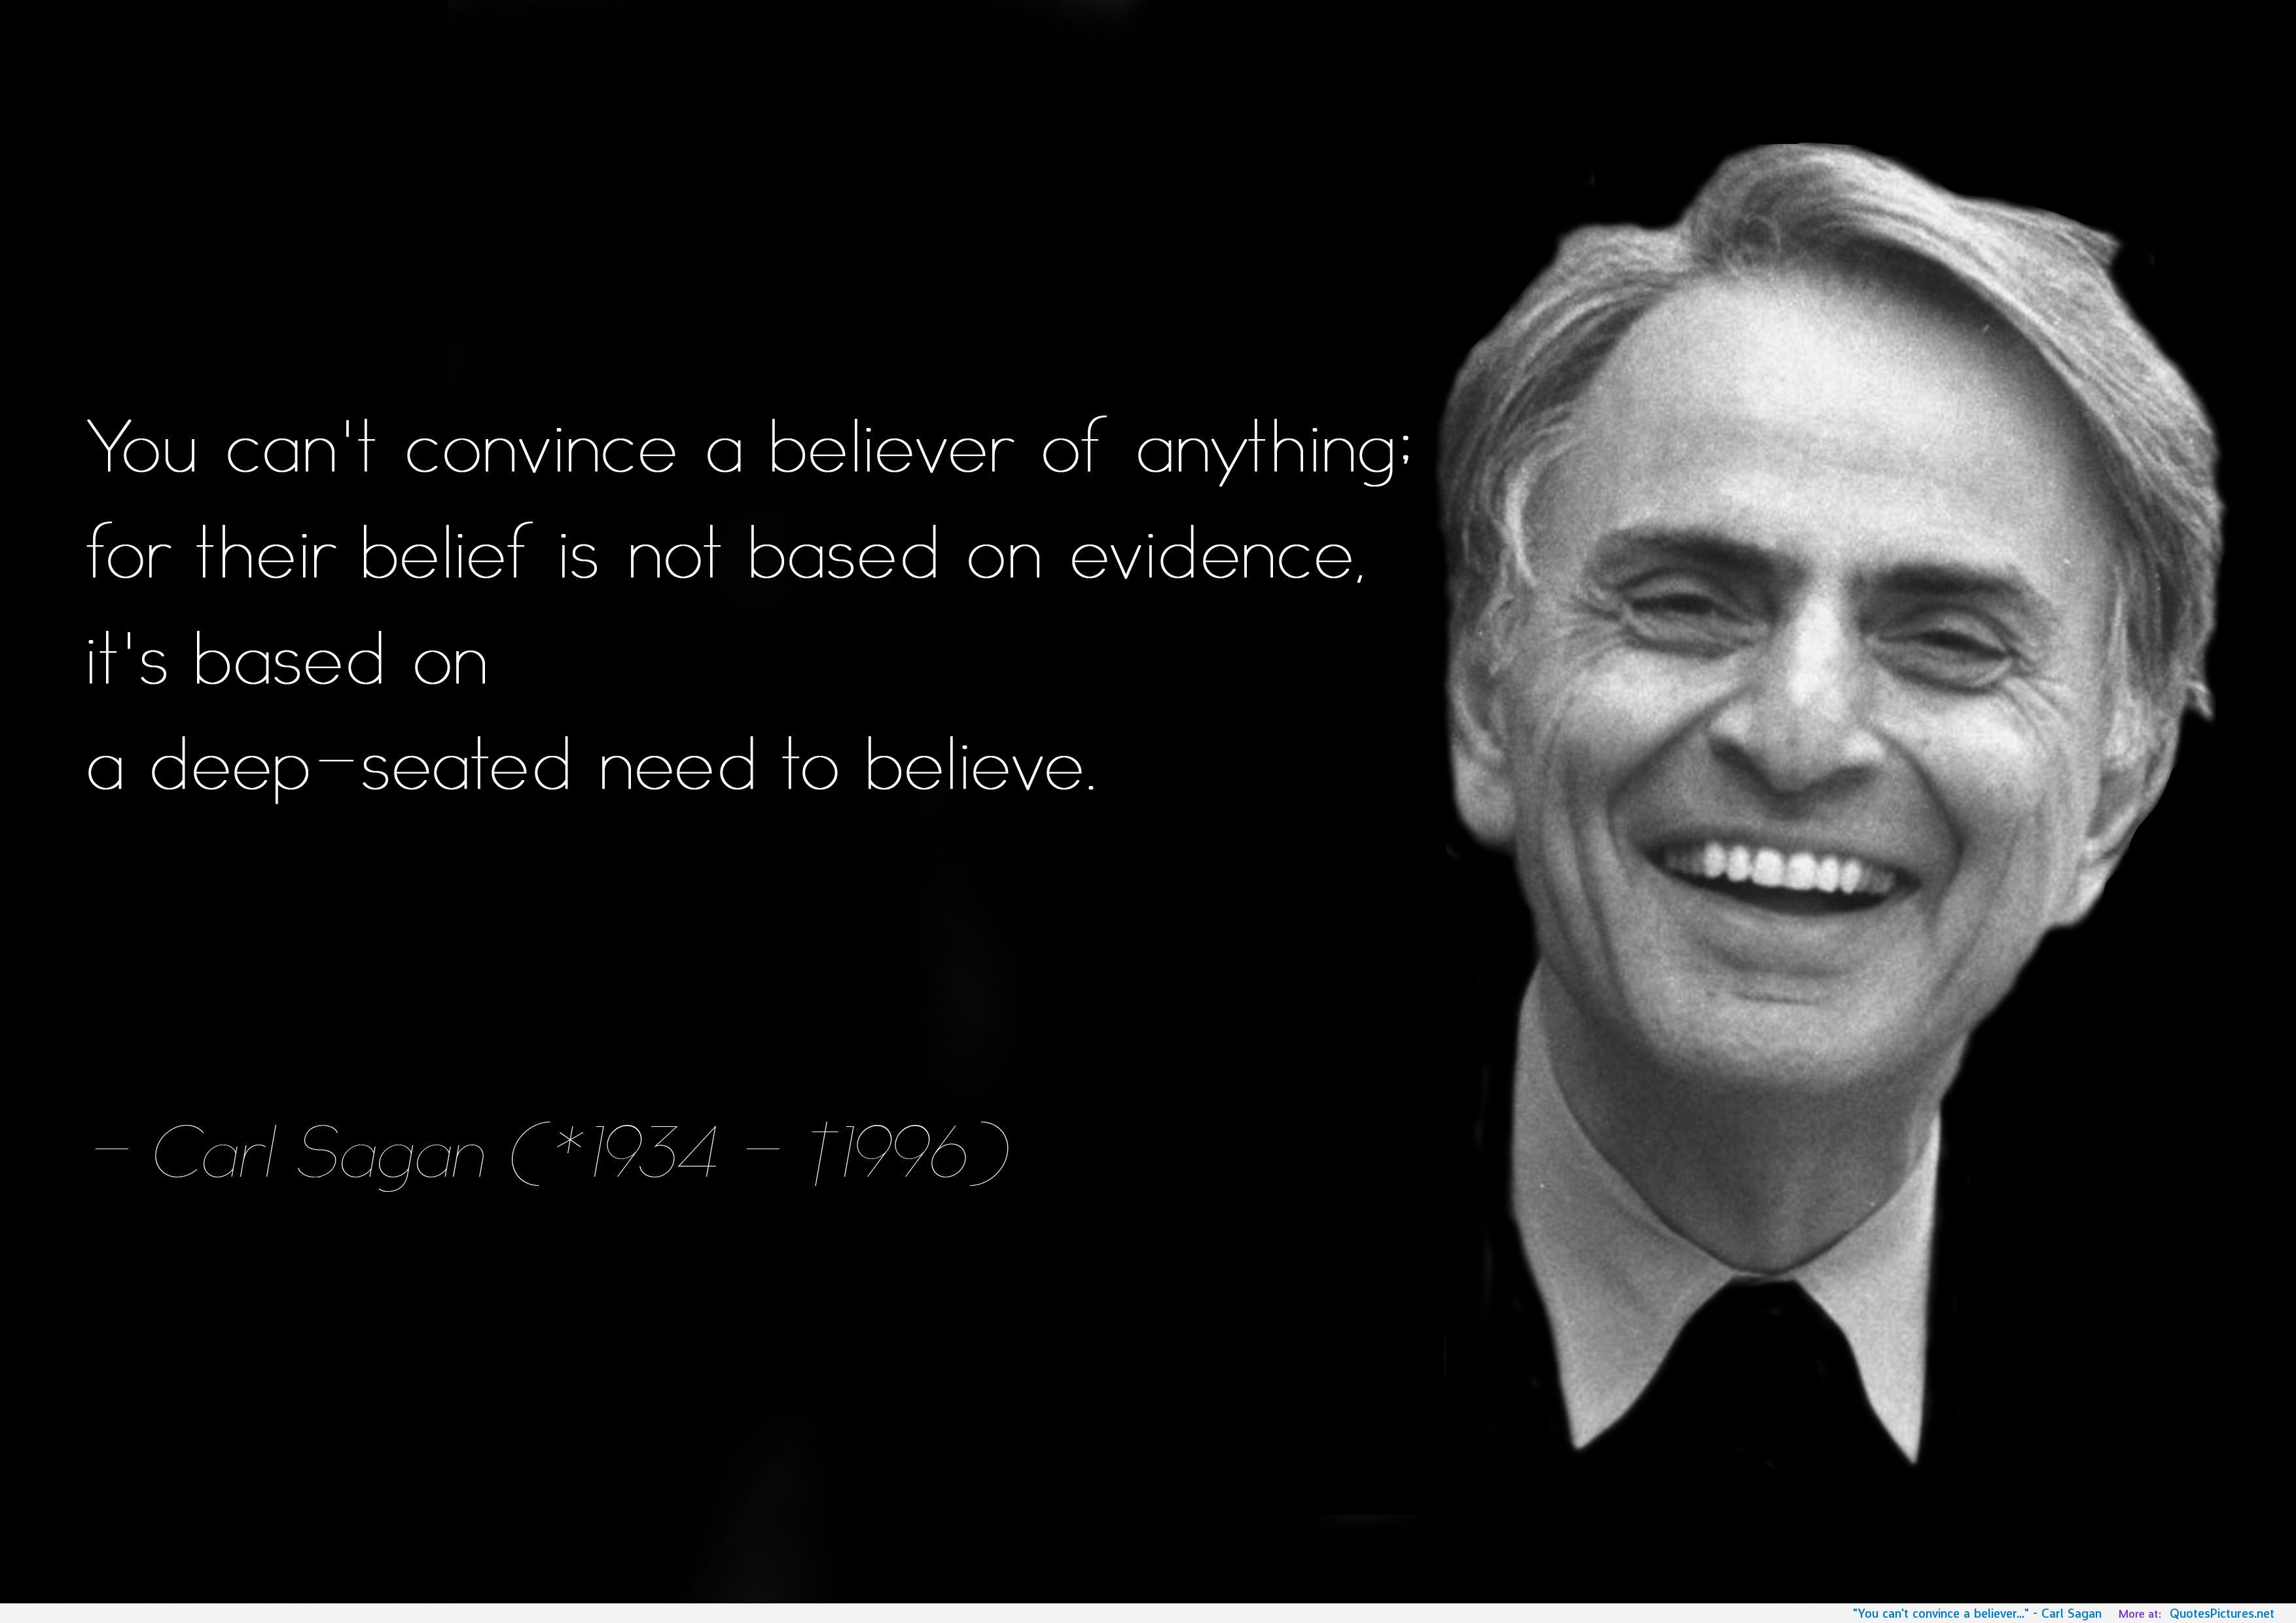 Carl Sagan Quotes Religion. QuotesGram